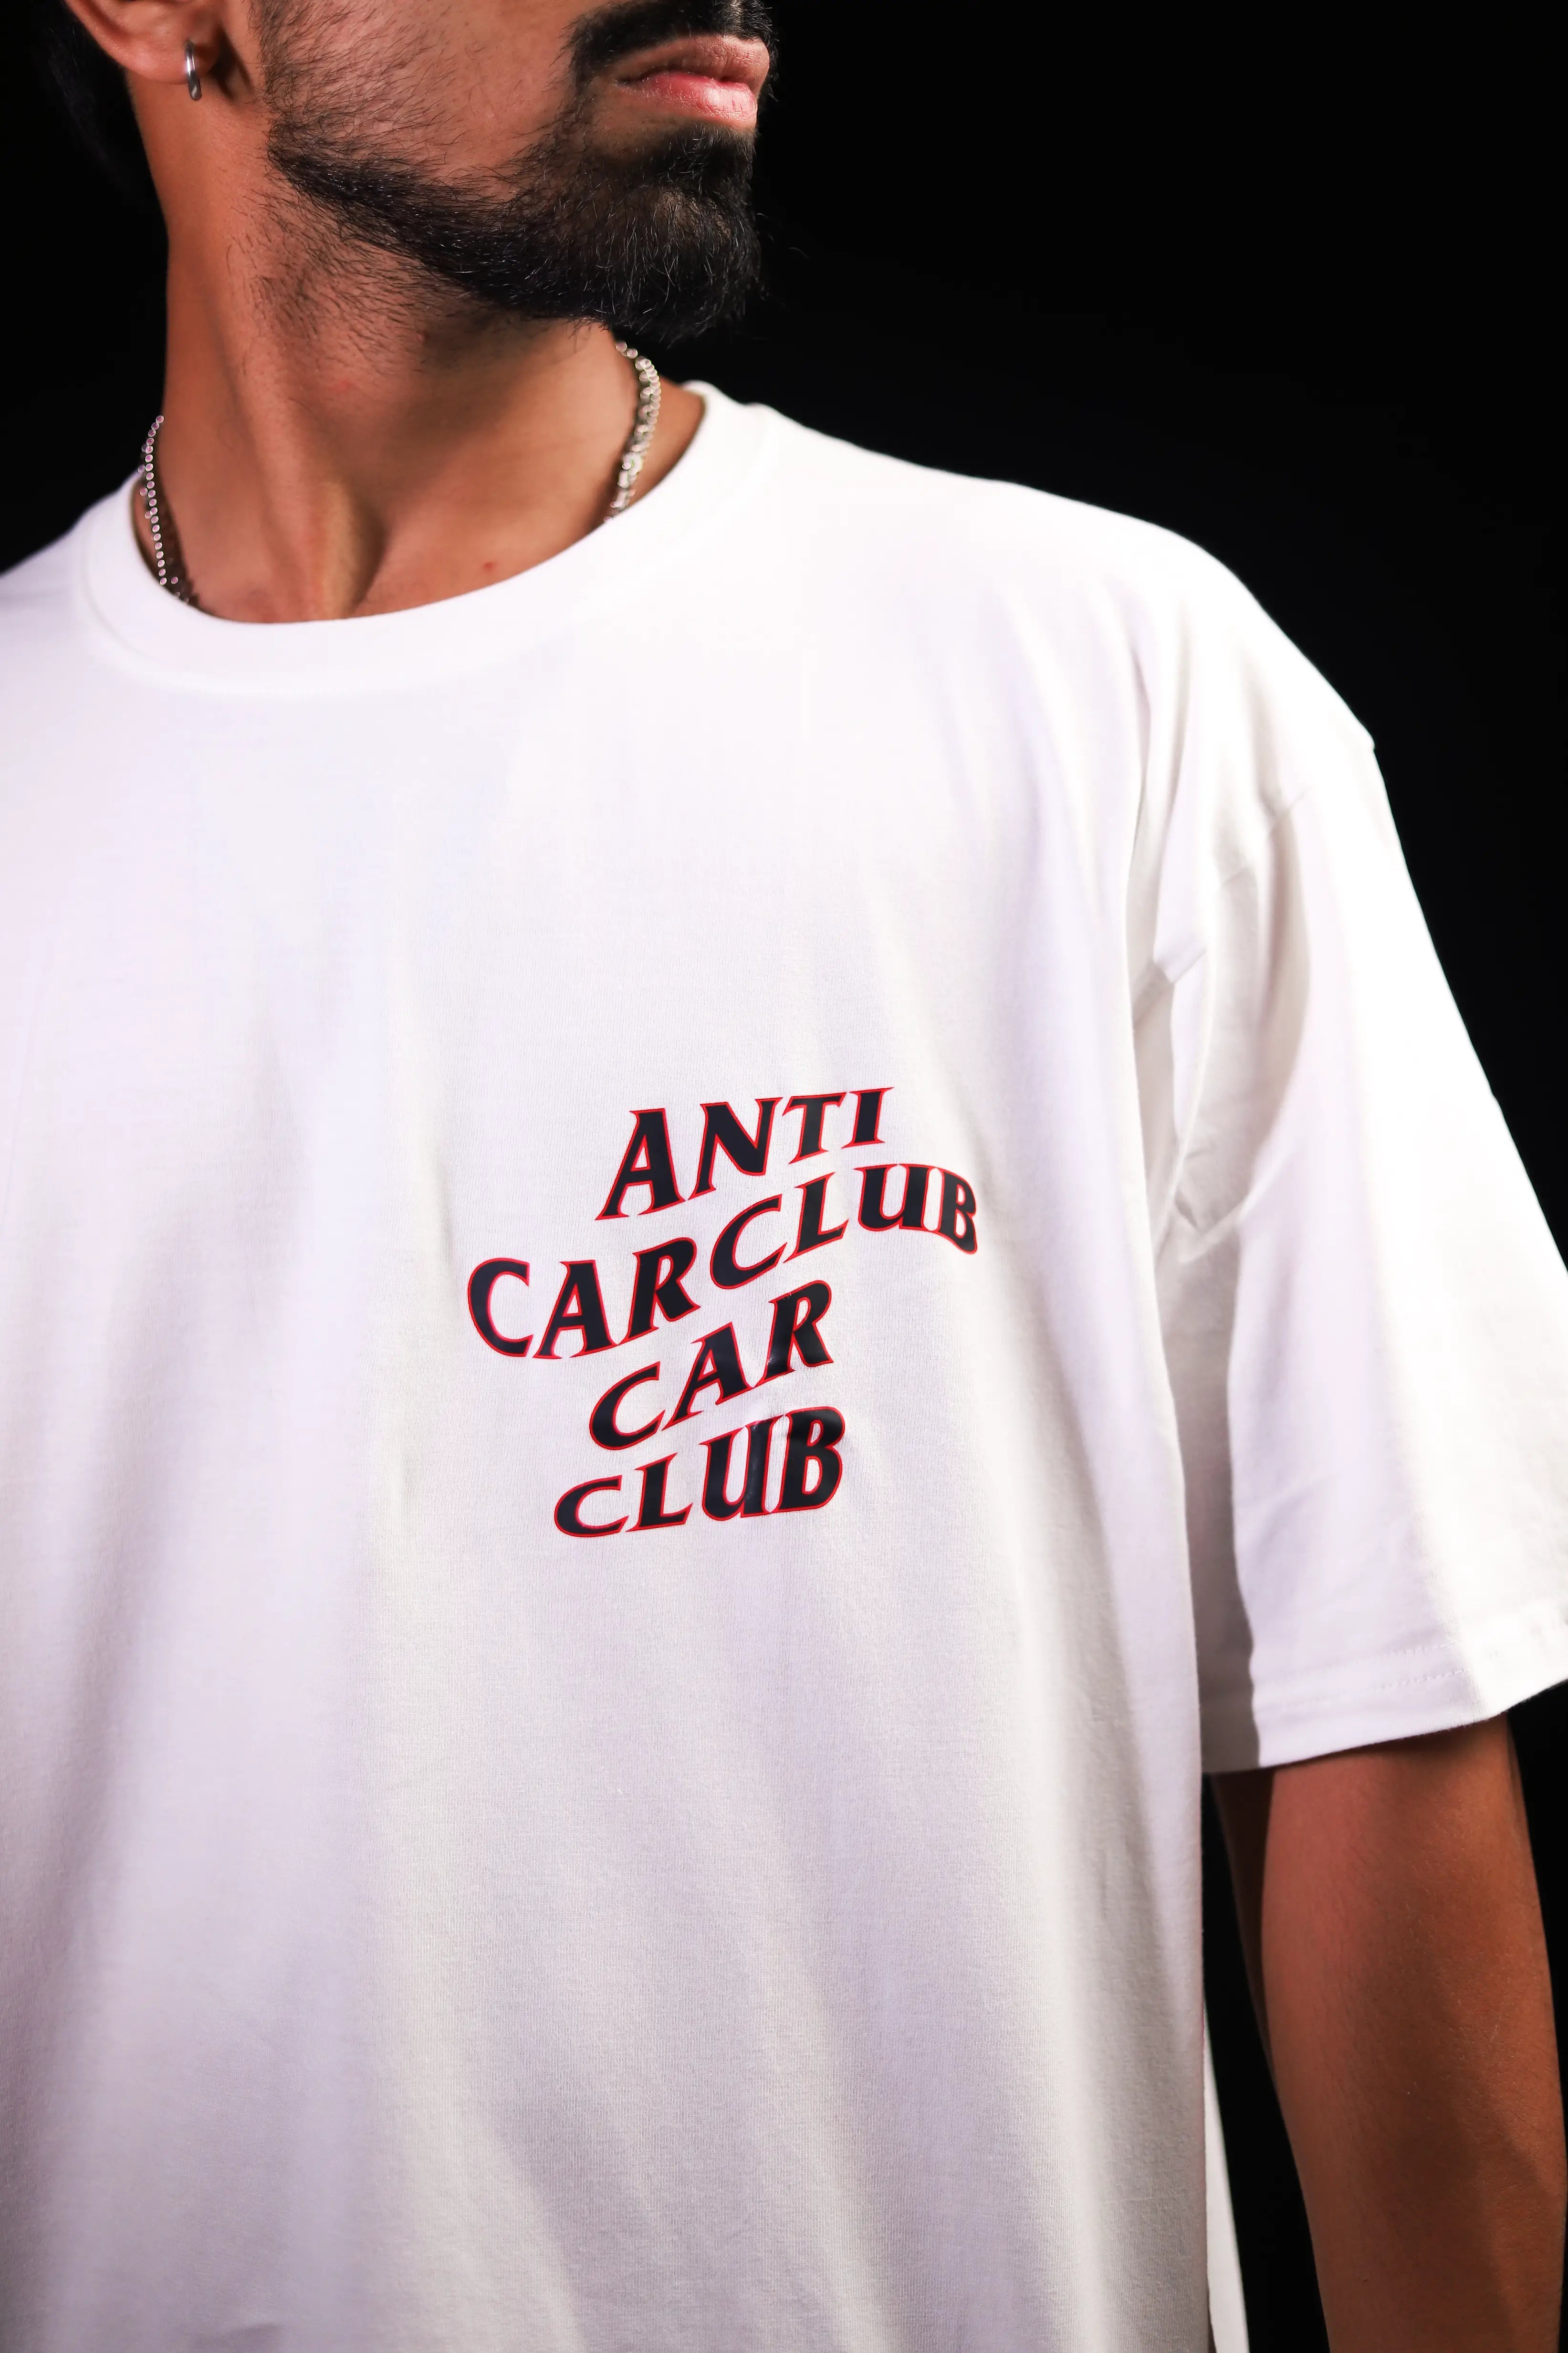 Anti car club Car Club (White)